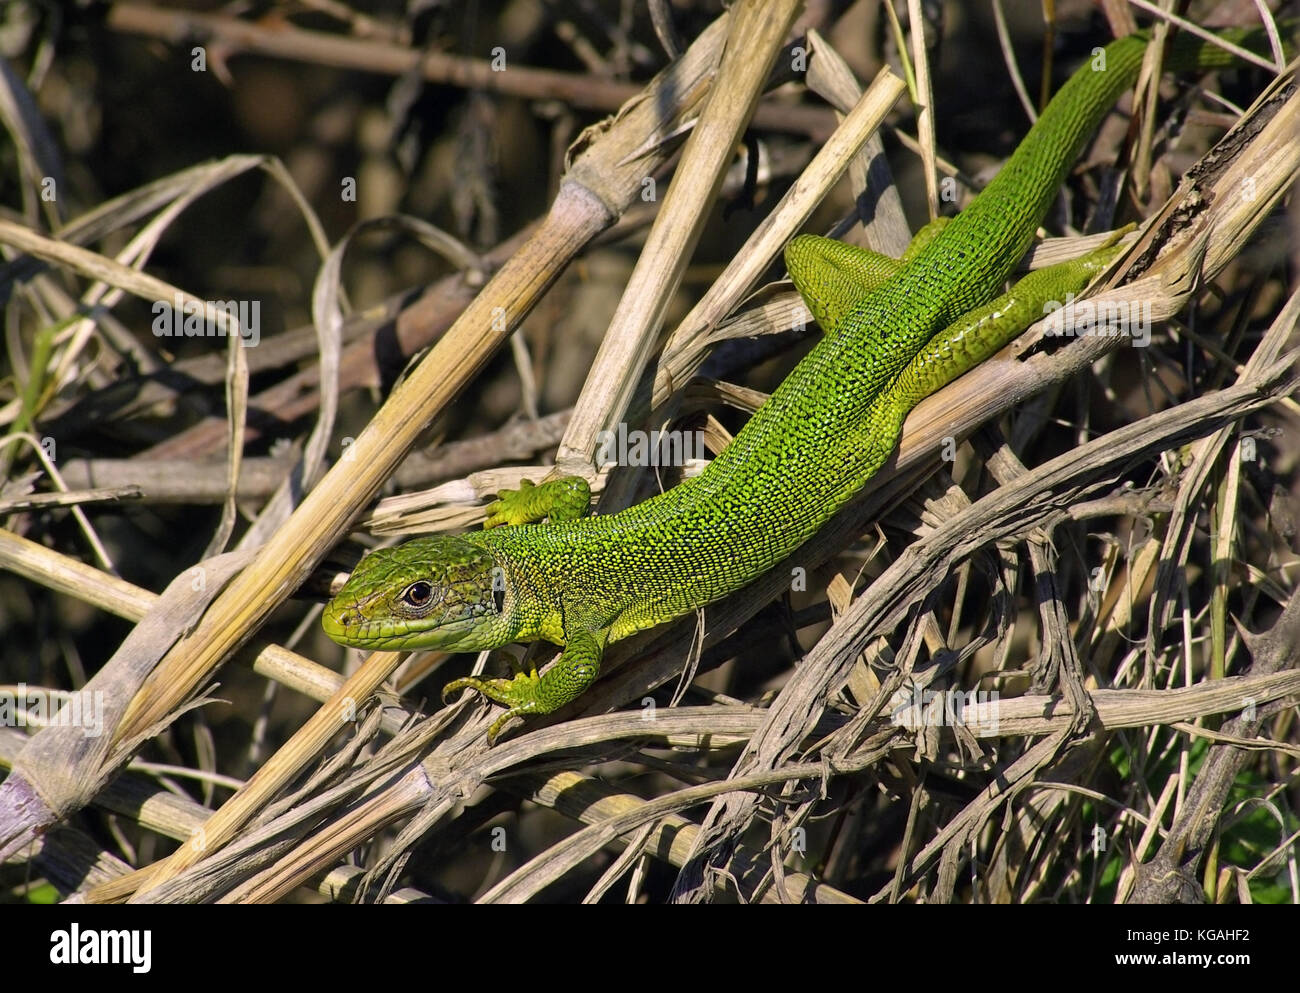 Western green lizard (Lacerta bilineata) Stock Photo